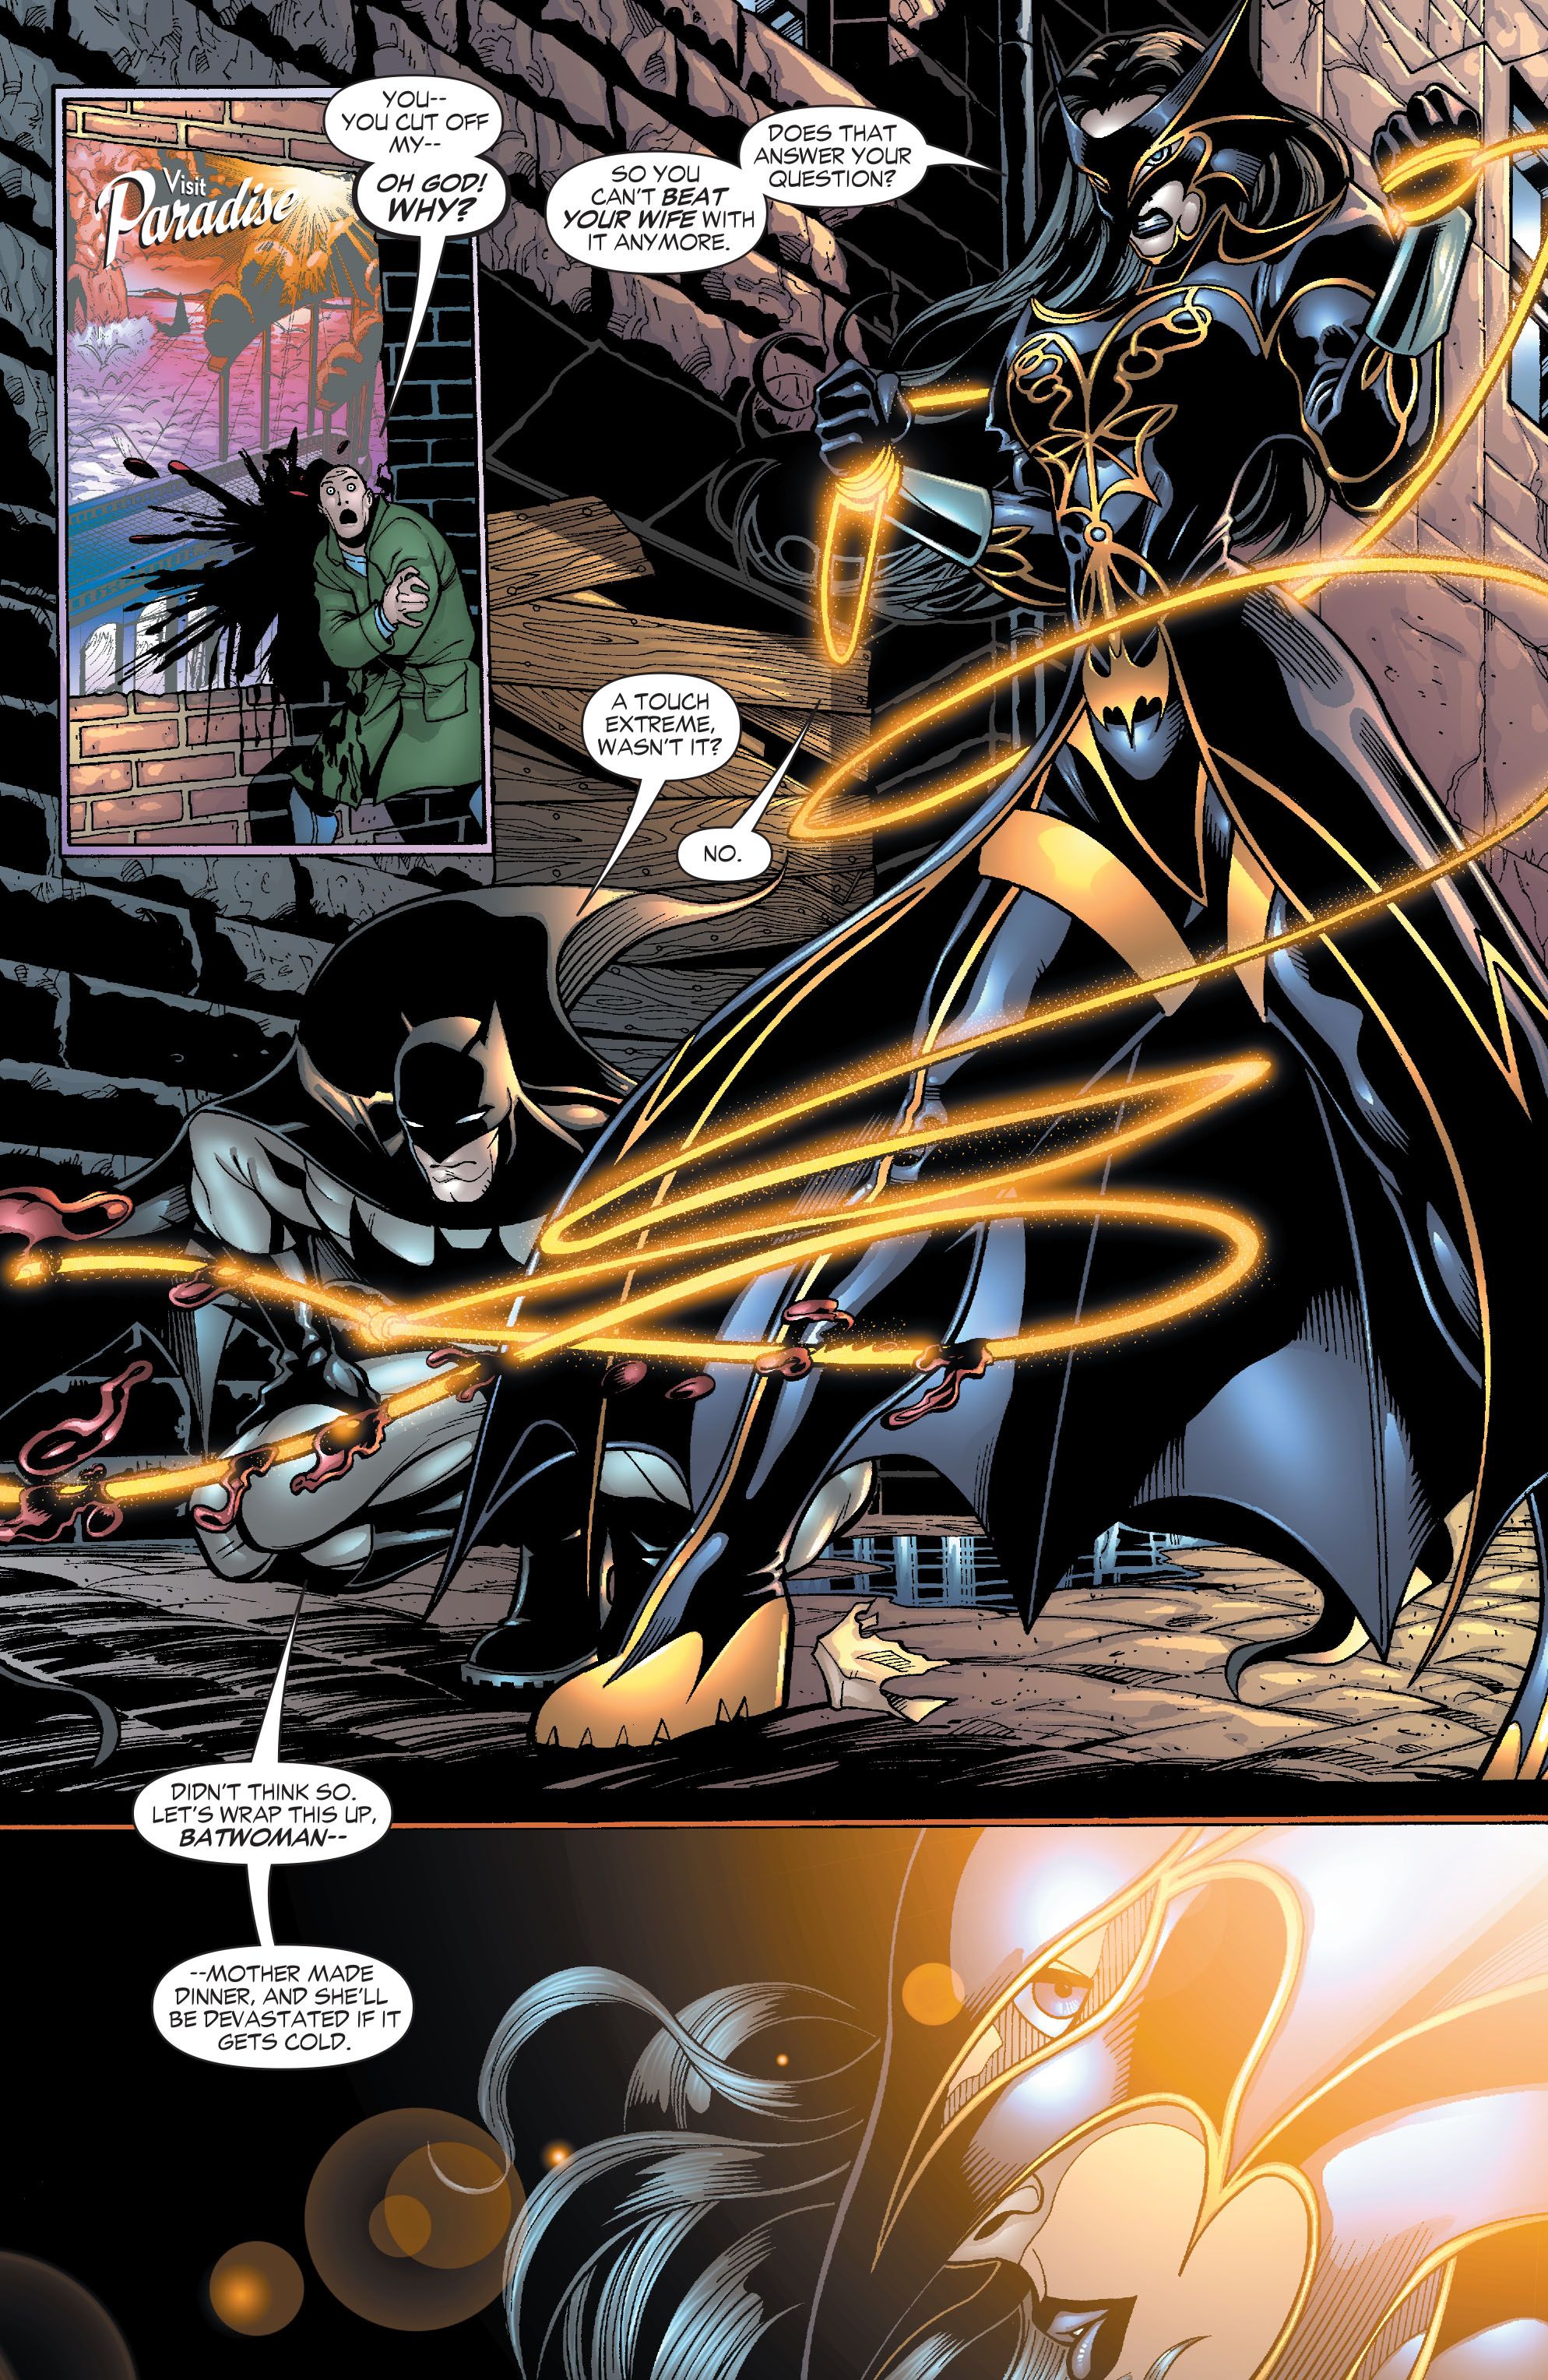 Wonder Woman staje się Batwoman